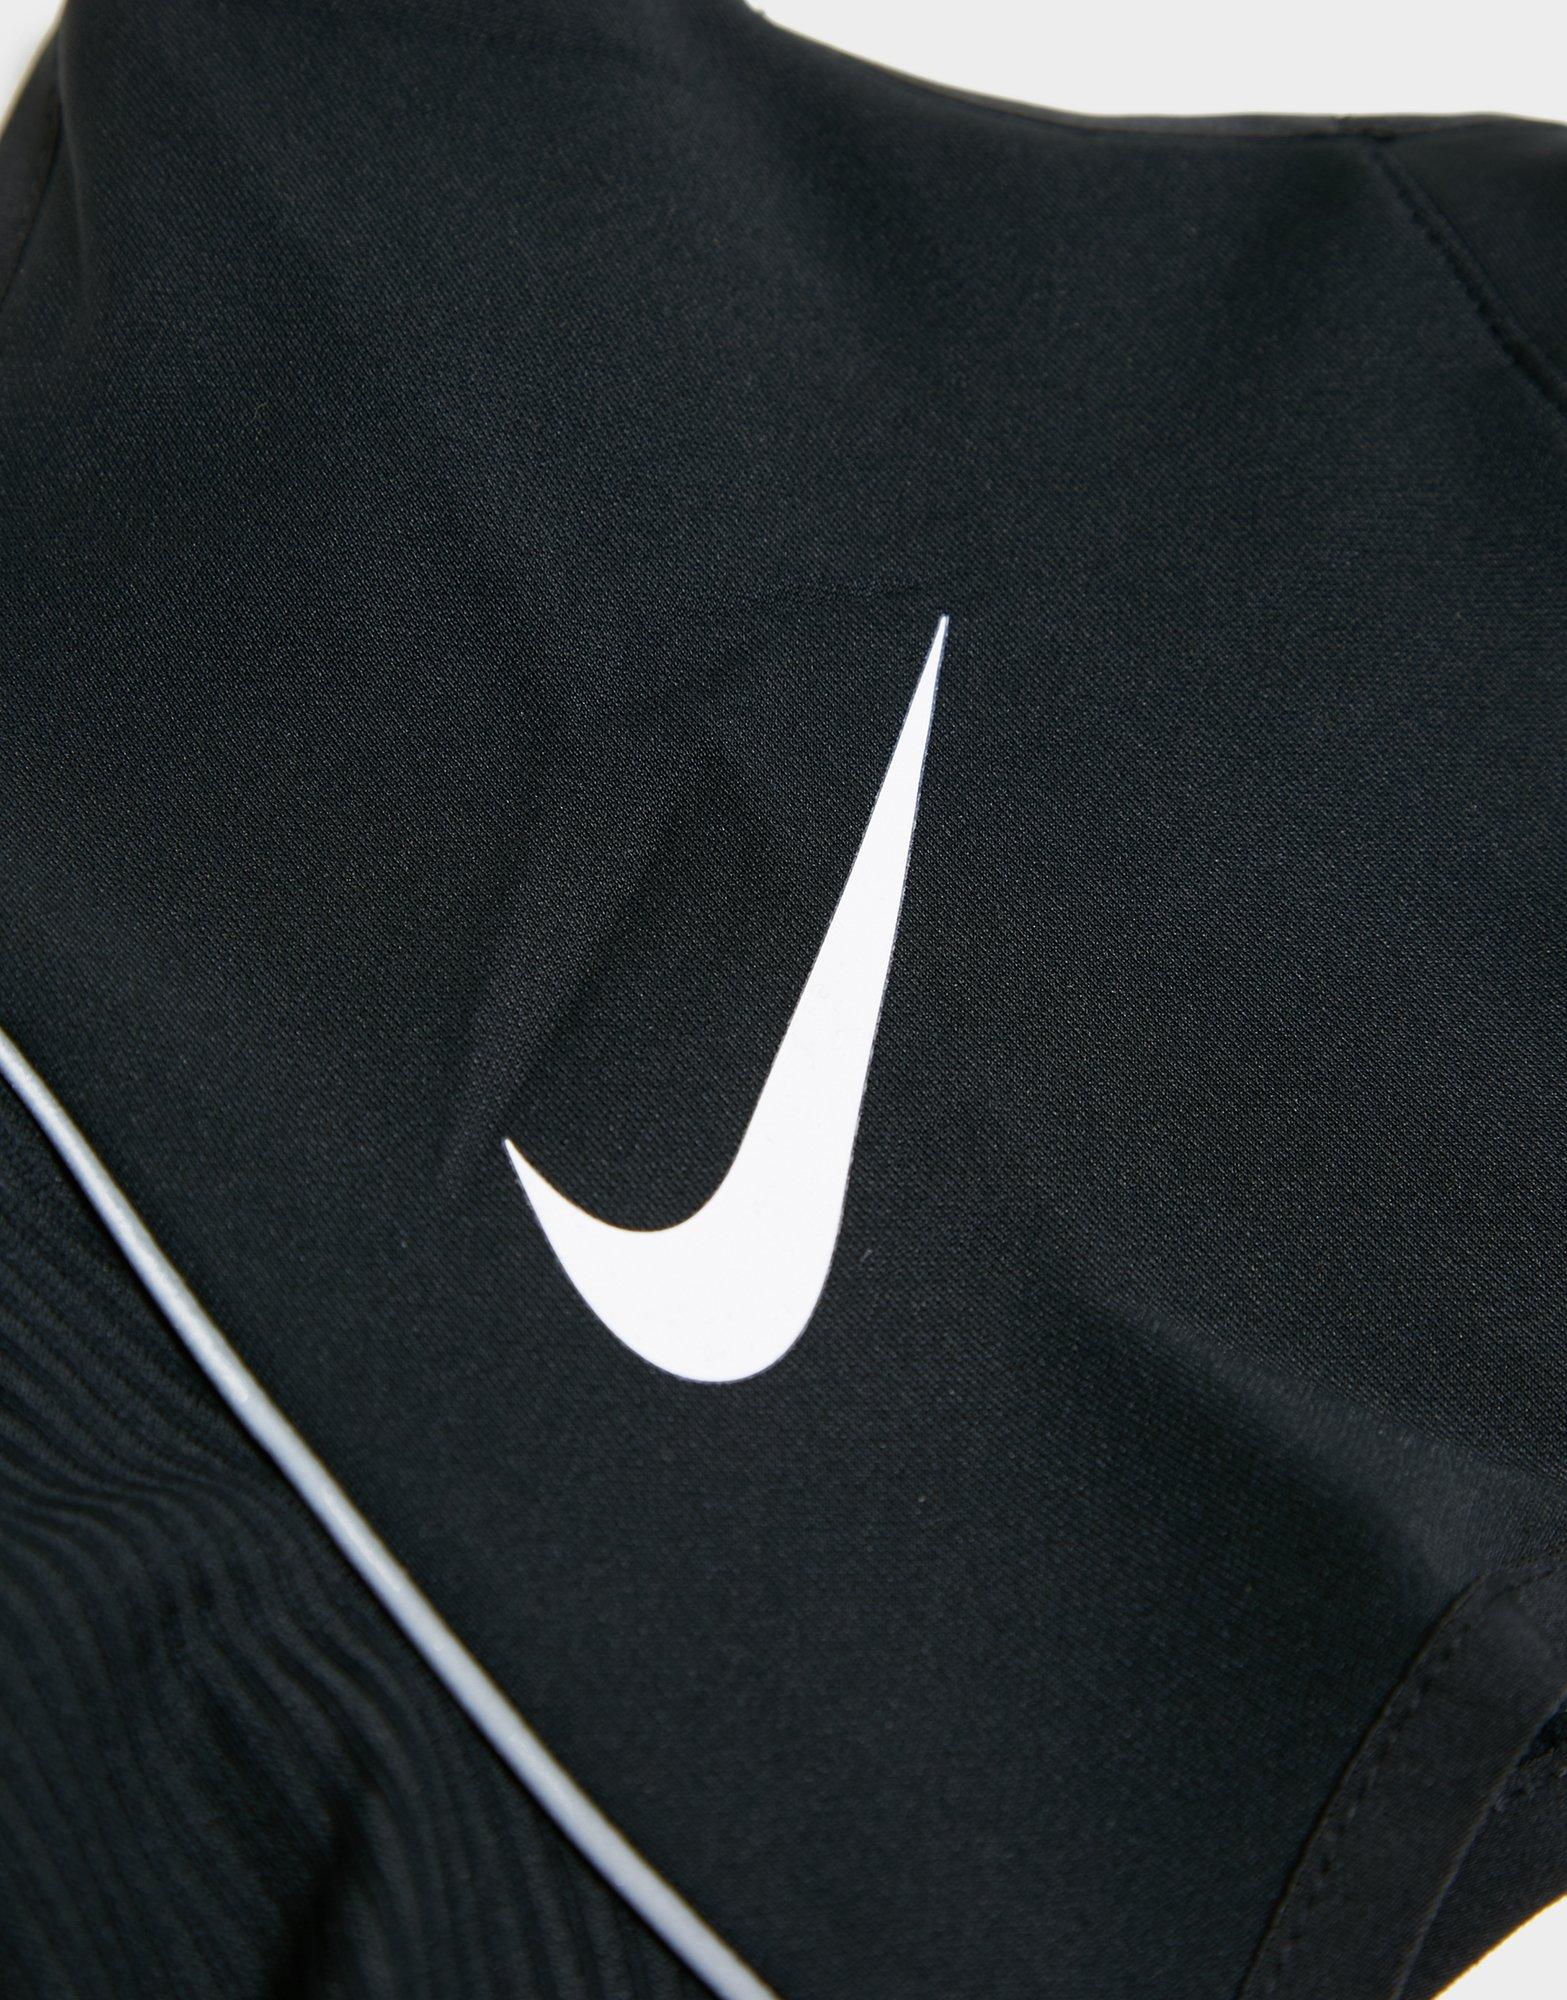 Nike Tour Gris Cache-Cou en Polaire 2.0 partiel, Taille Unique Unisexe